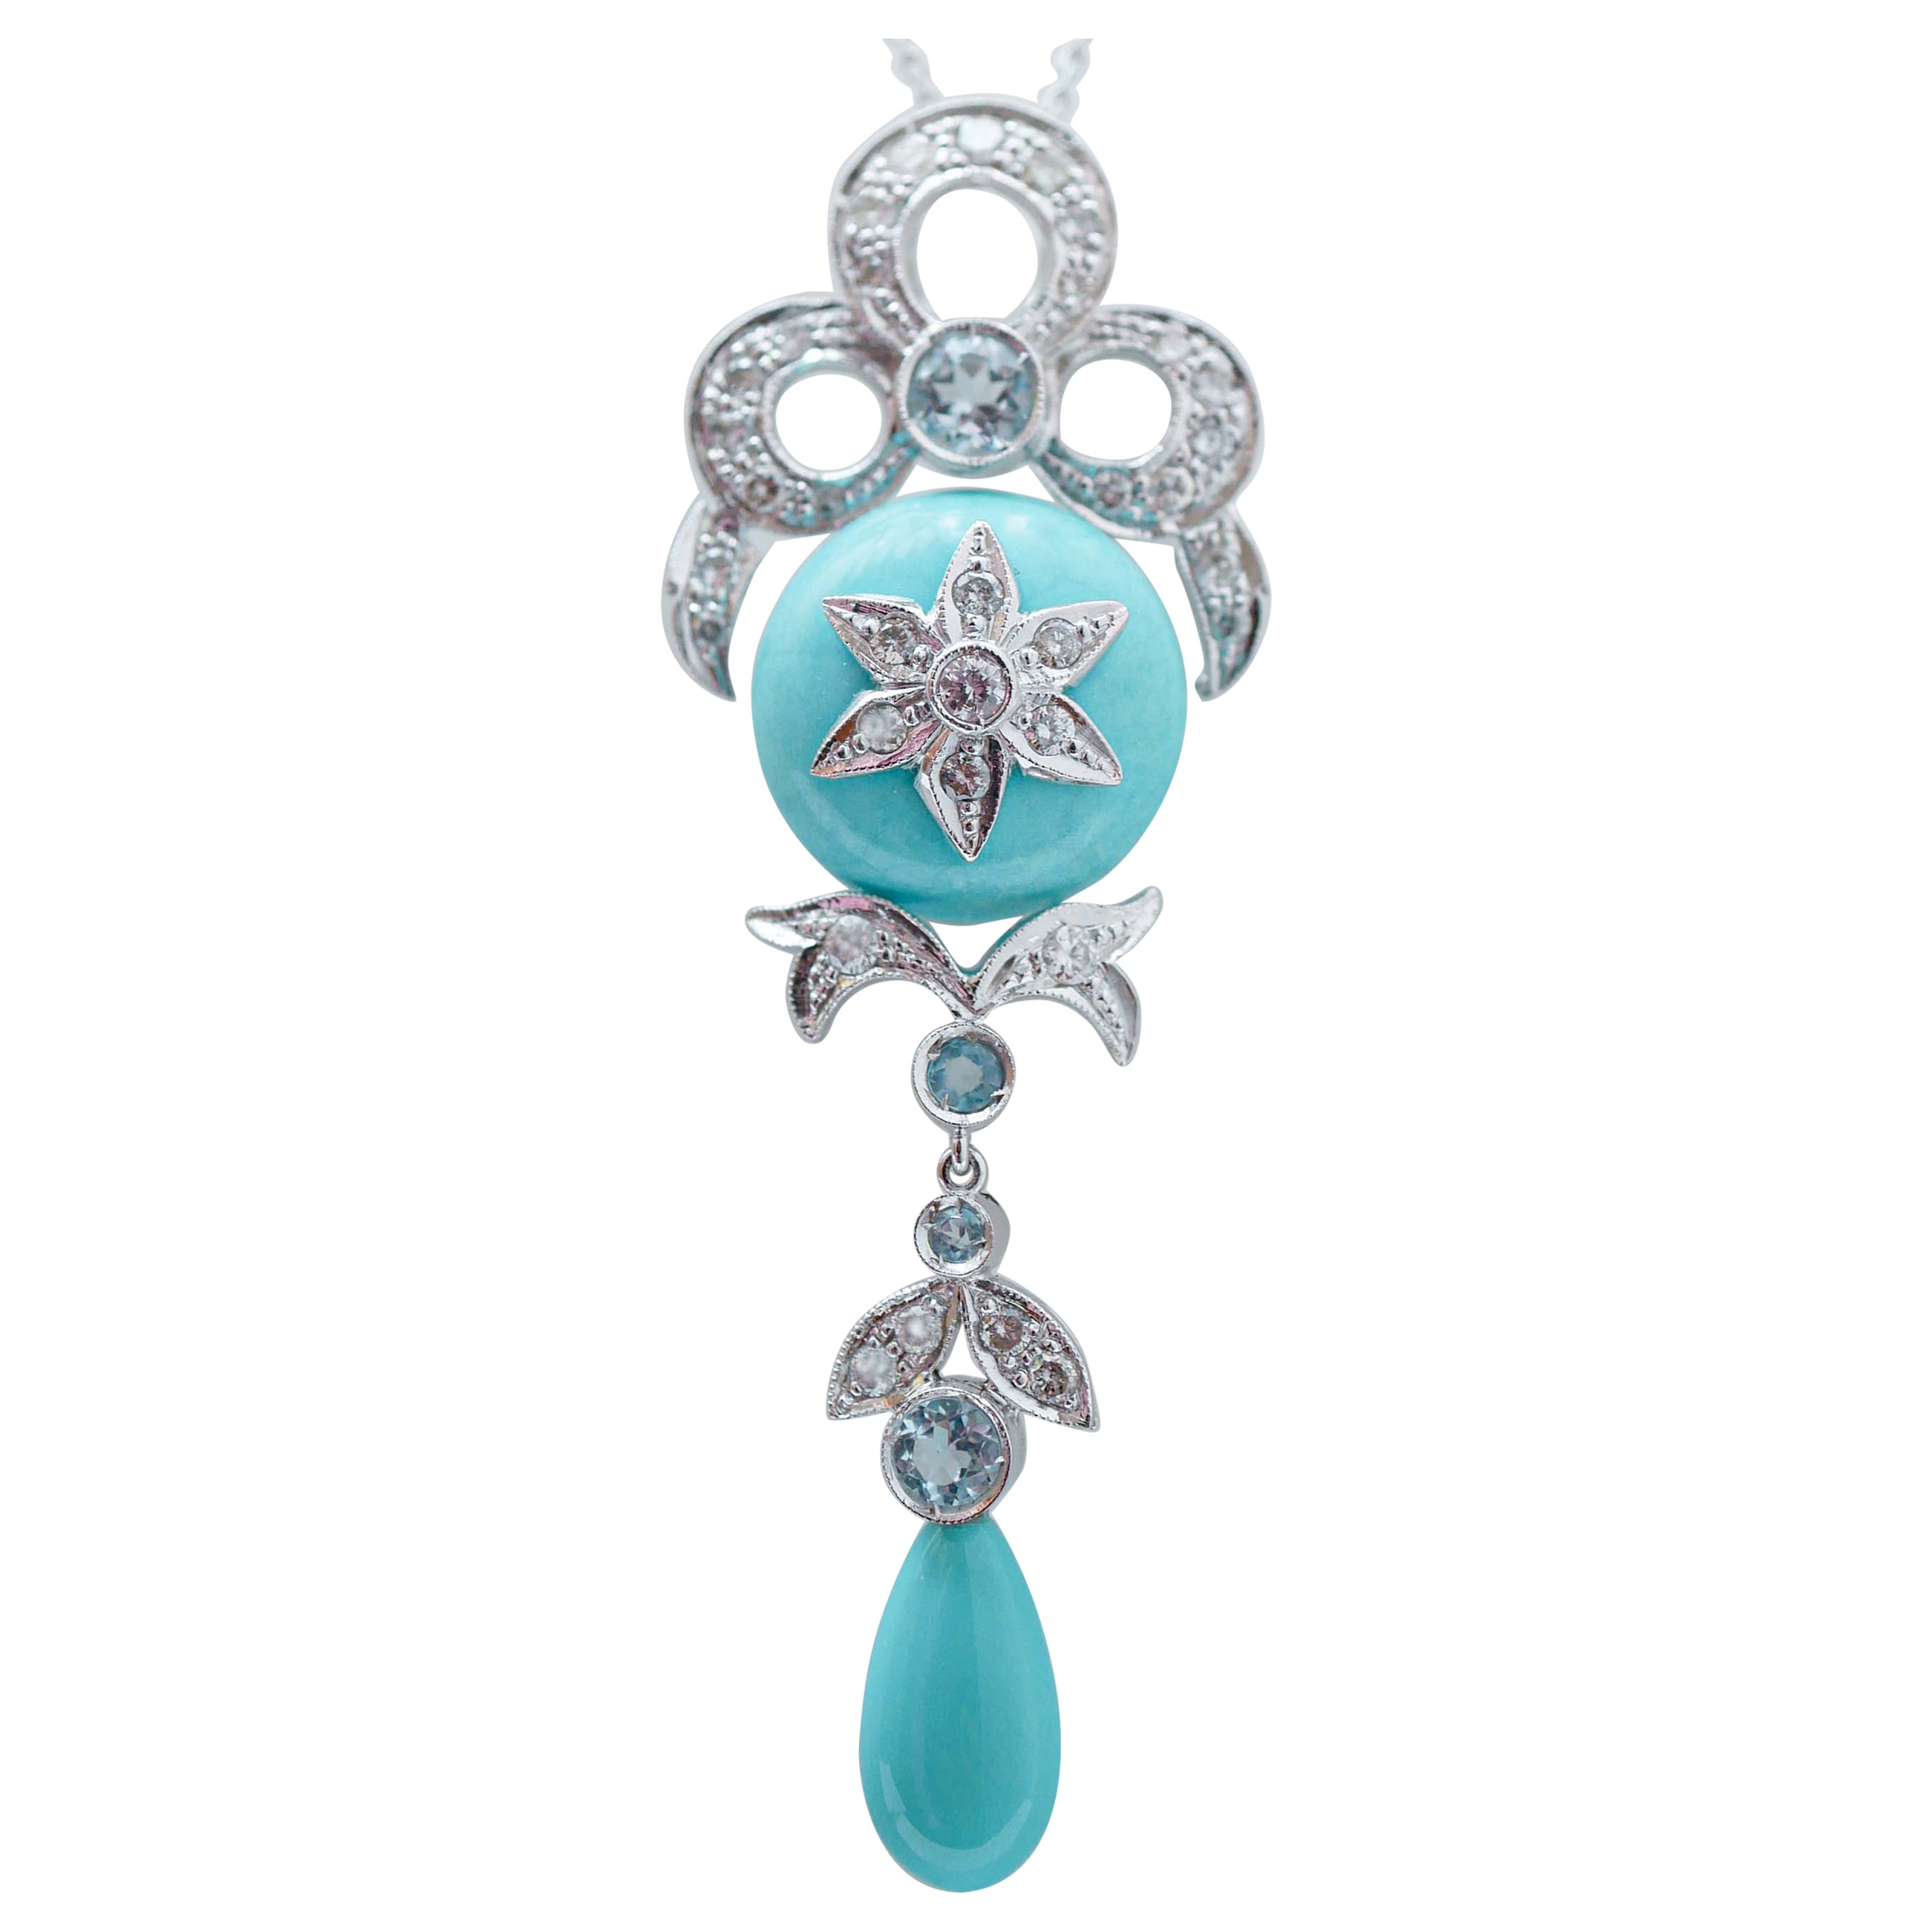 Turquoise, Aquamarine Colour Topazs, Diamonds, Platinum Pendant Necklace. For Sale